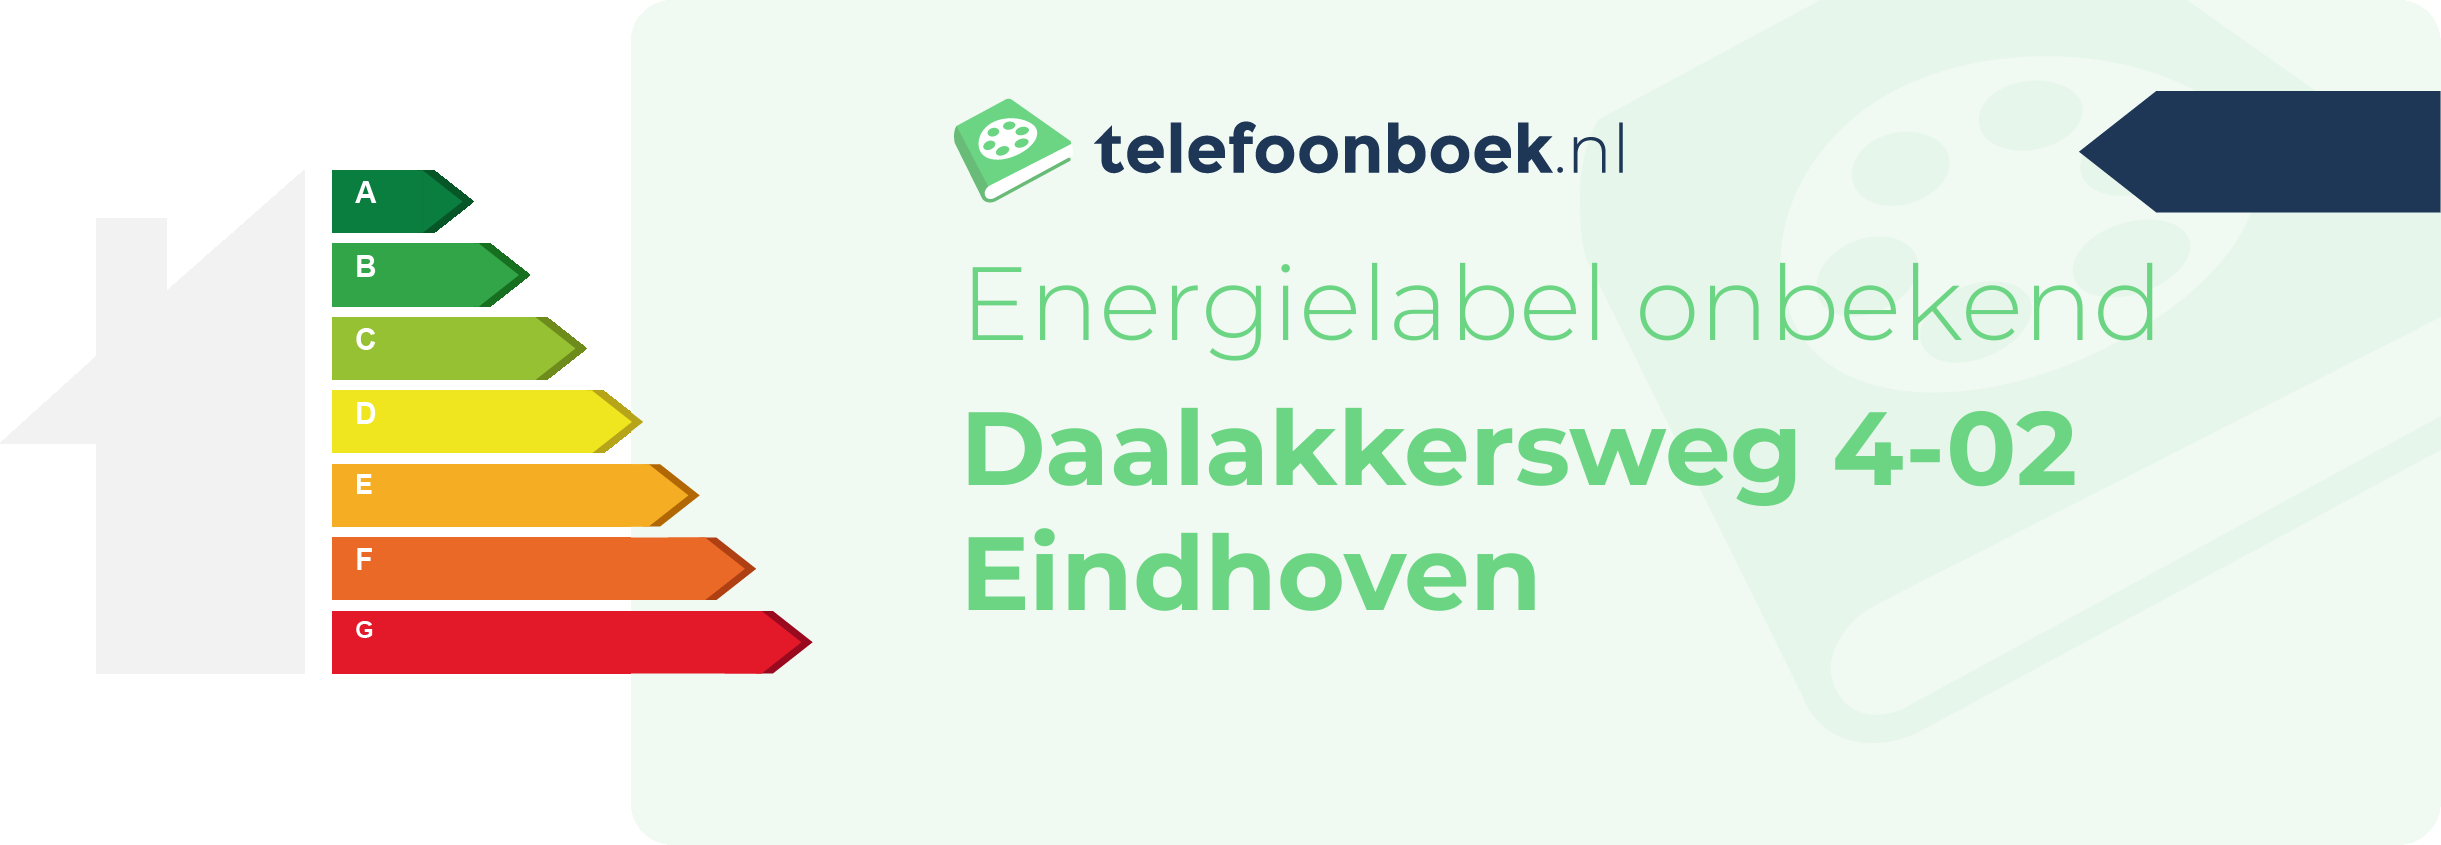 Energielabel Daalakkersweg 4-02 Eindhoven